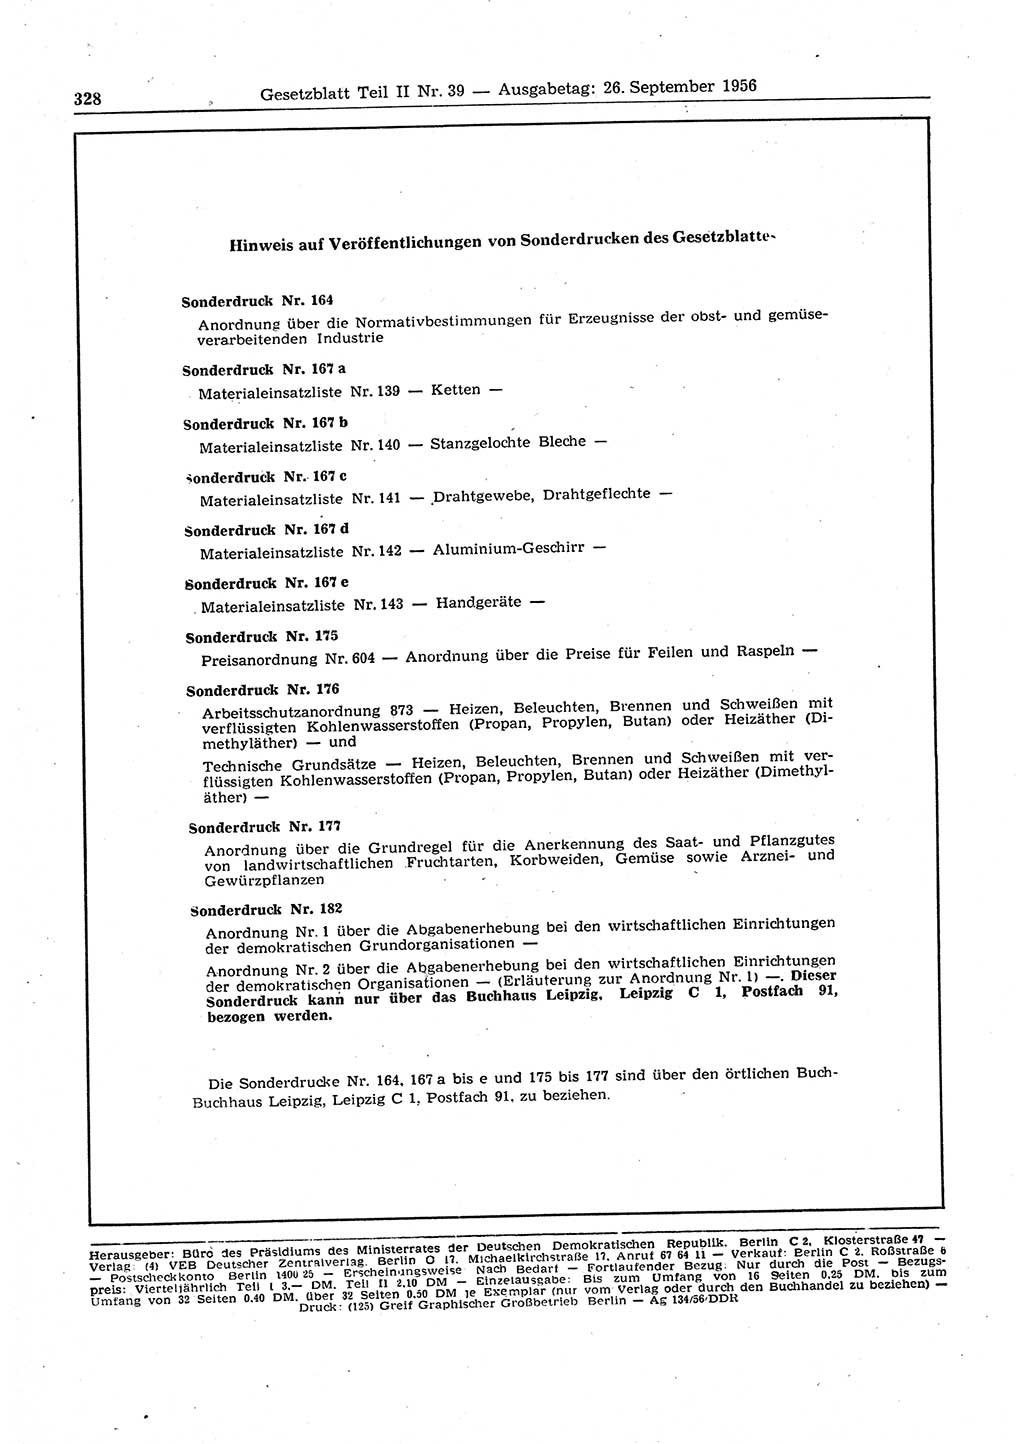 Gesetzblatt (GBl.) der Deutschen Demokratischen Republik (DDR) Teil ⅠⅠ 1956, Seite 328 (GBl. DDR ⅠⅠ 1956, S. 328)